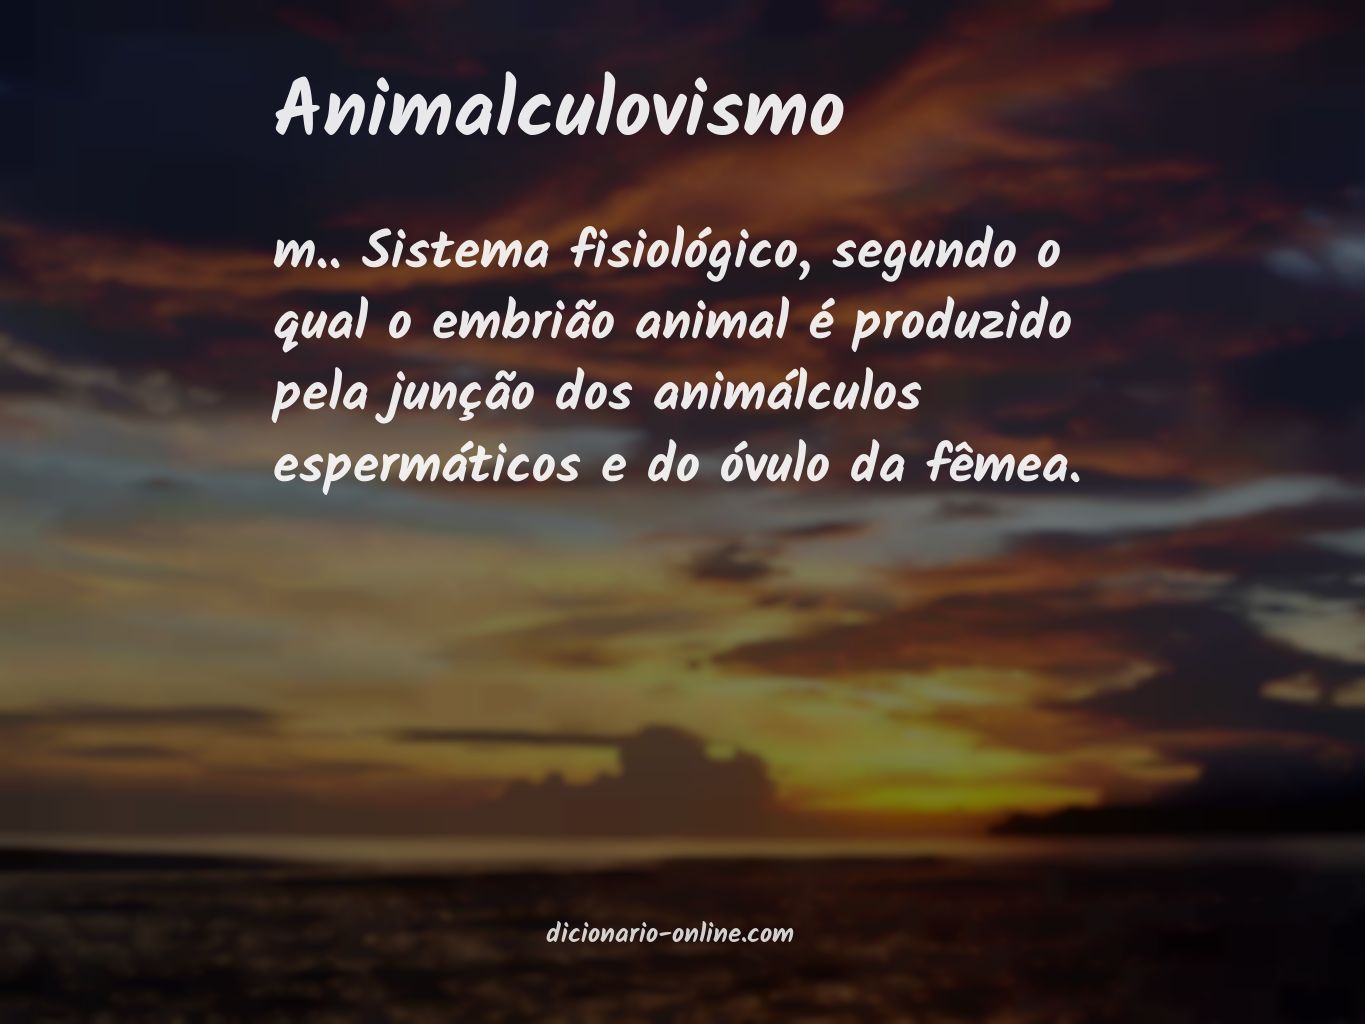 Significado de animalculovismo